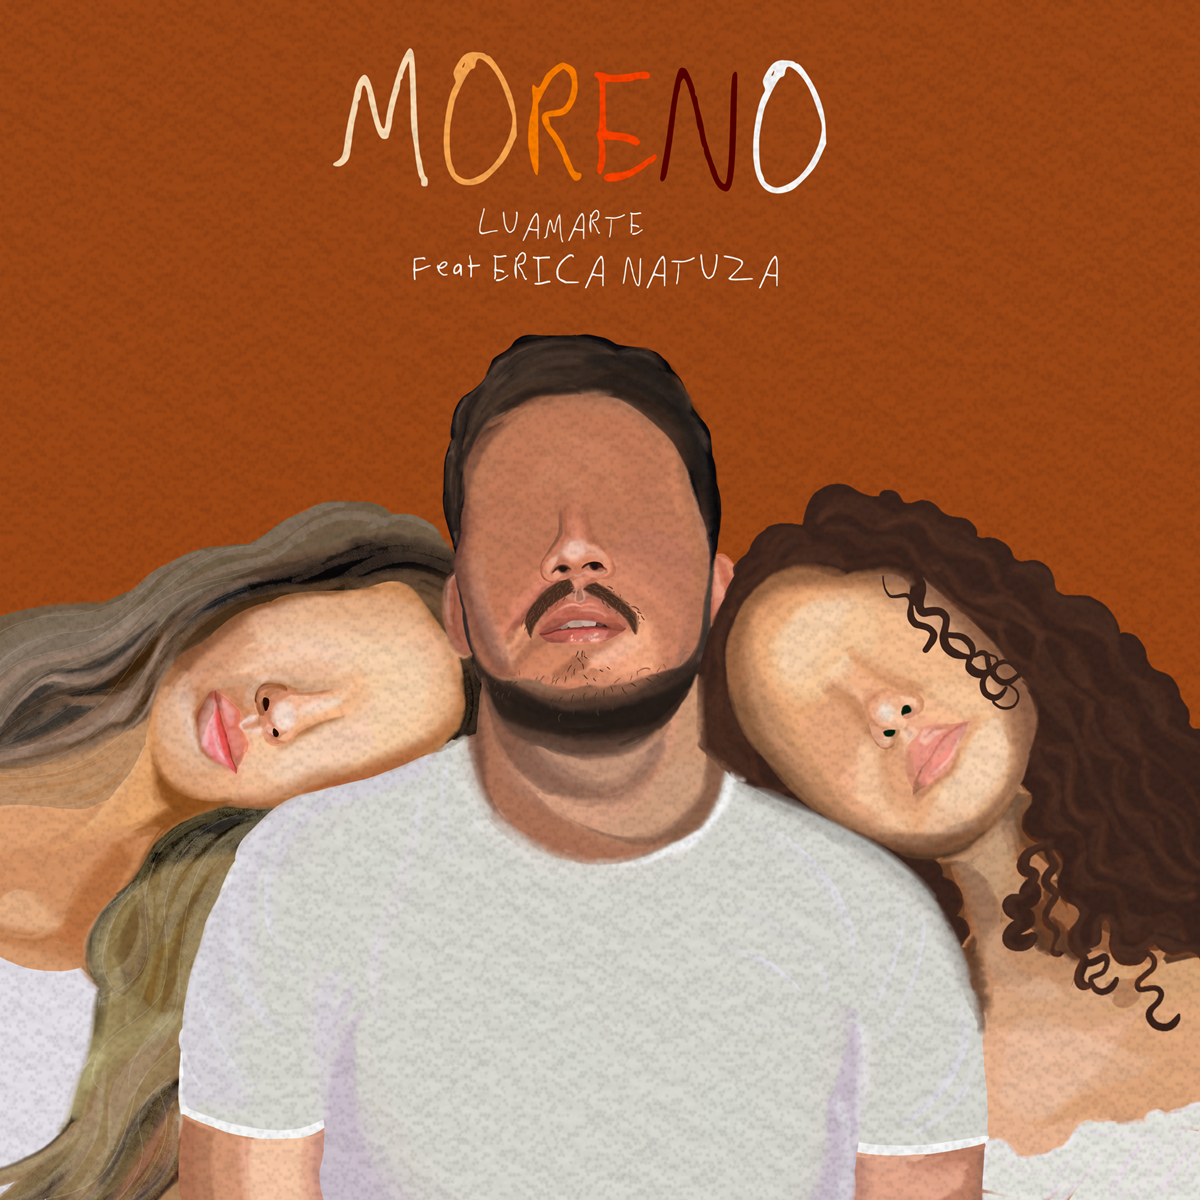 Luamarte lança single “Moreno” em feat com Erica Natuza